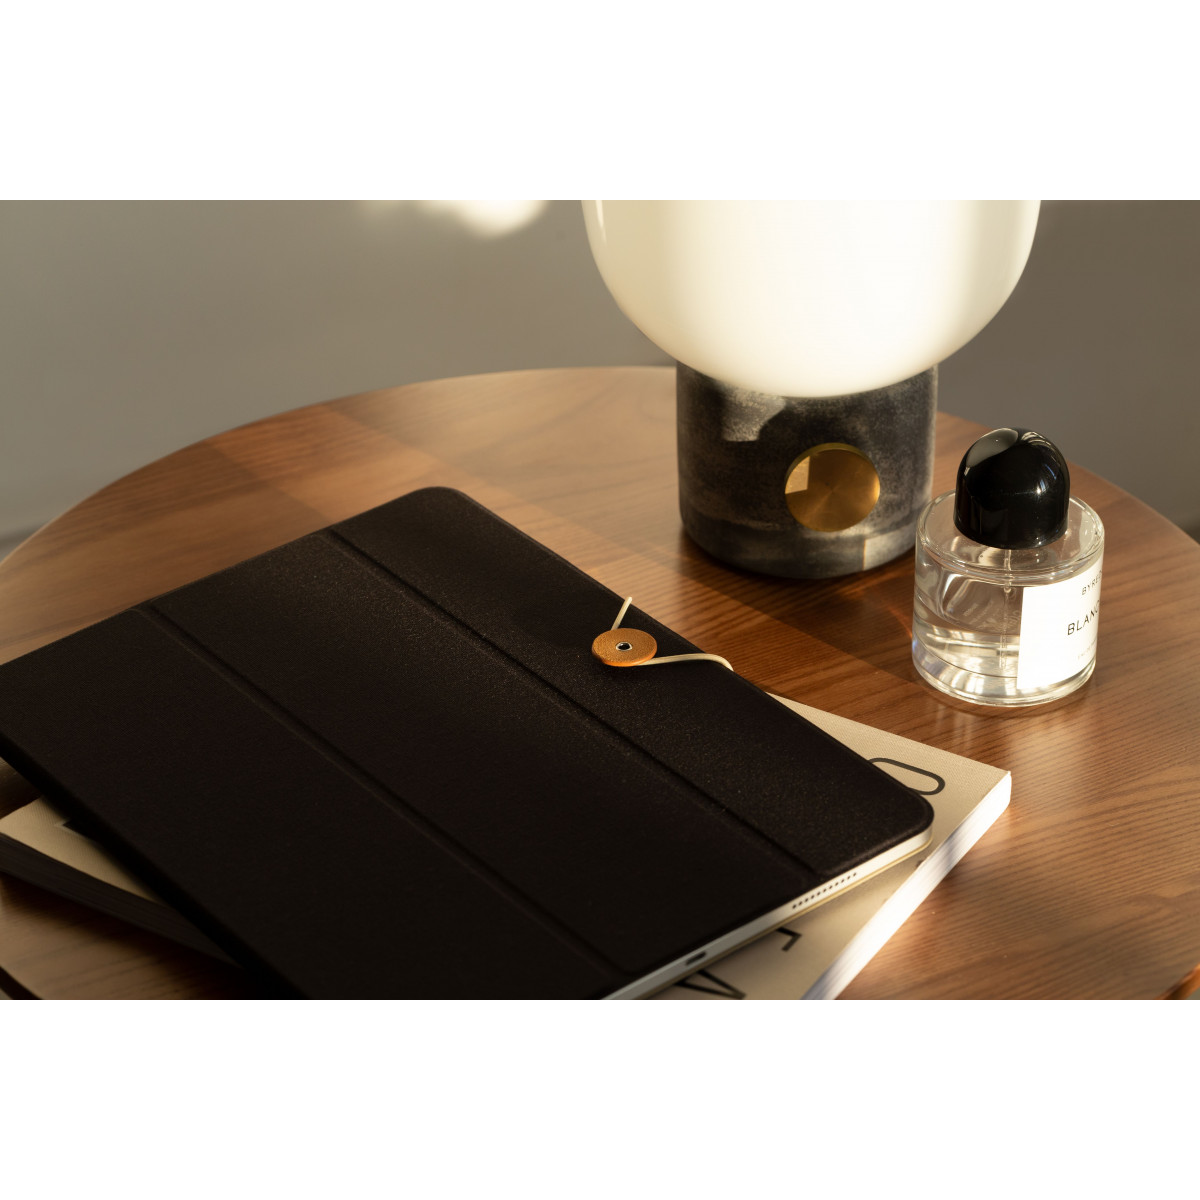 Защитный чехол Native Union Folio для iPad Pro 11” Черный